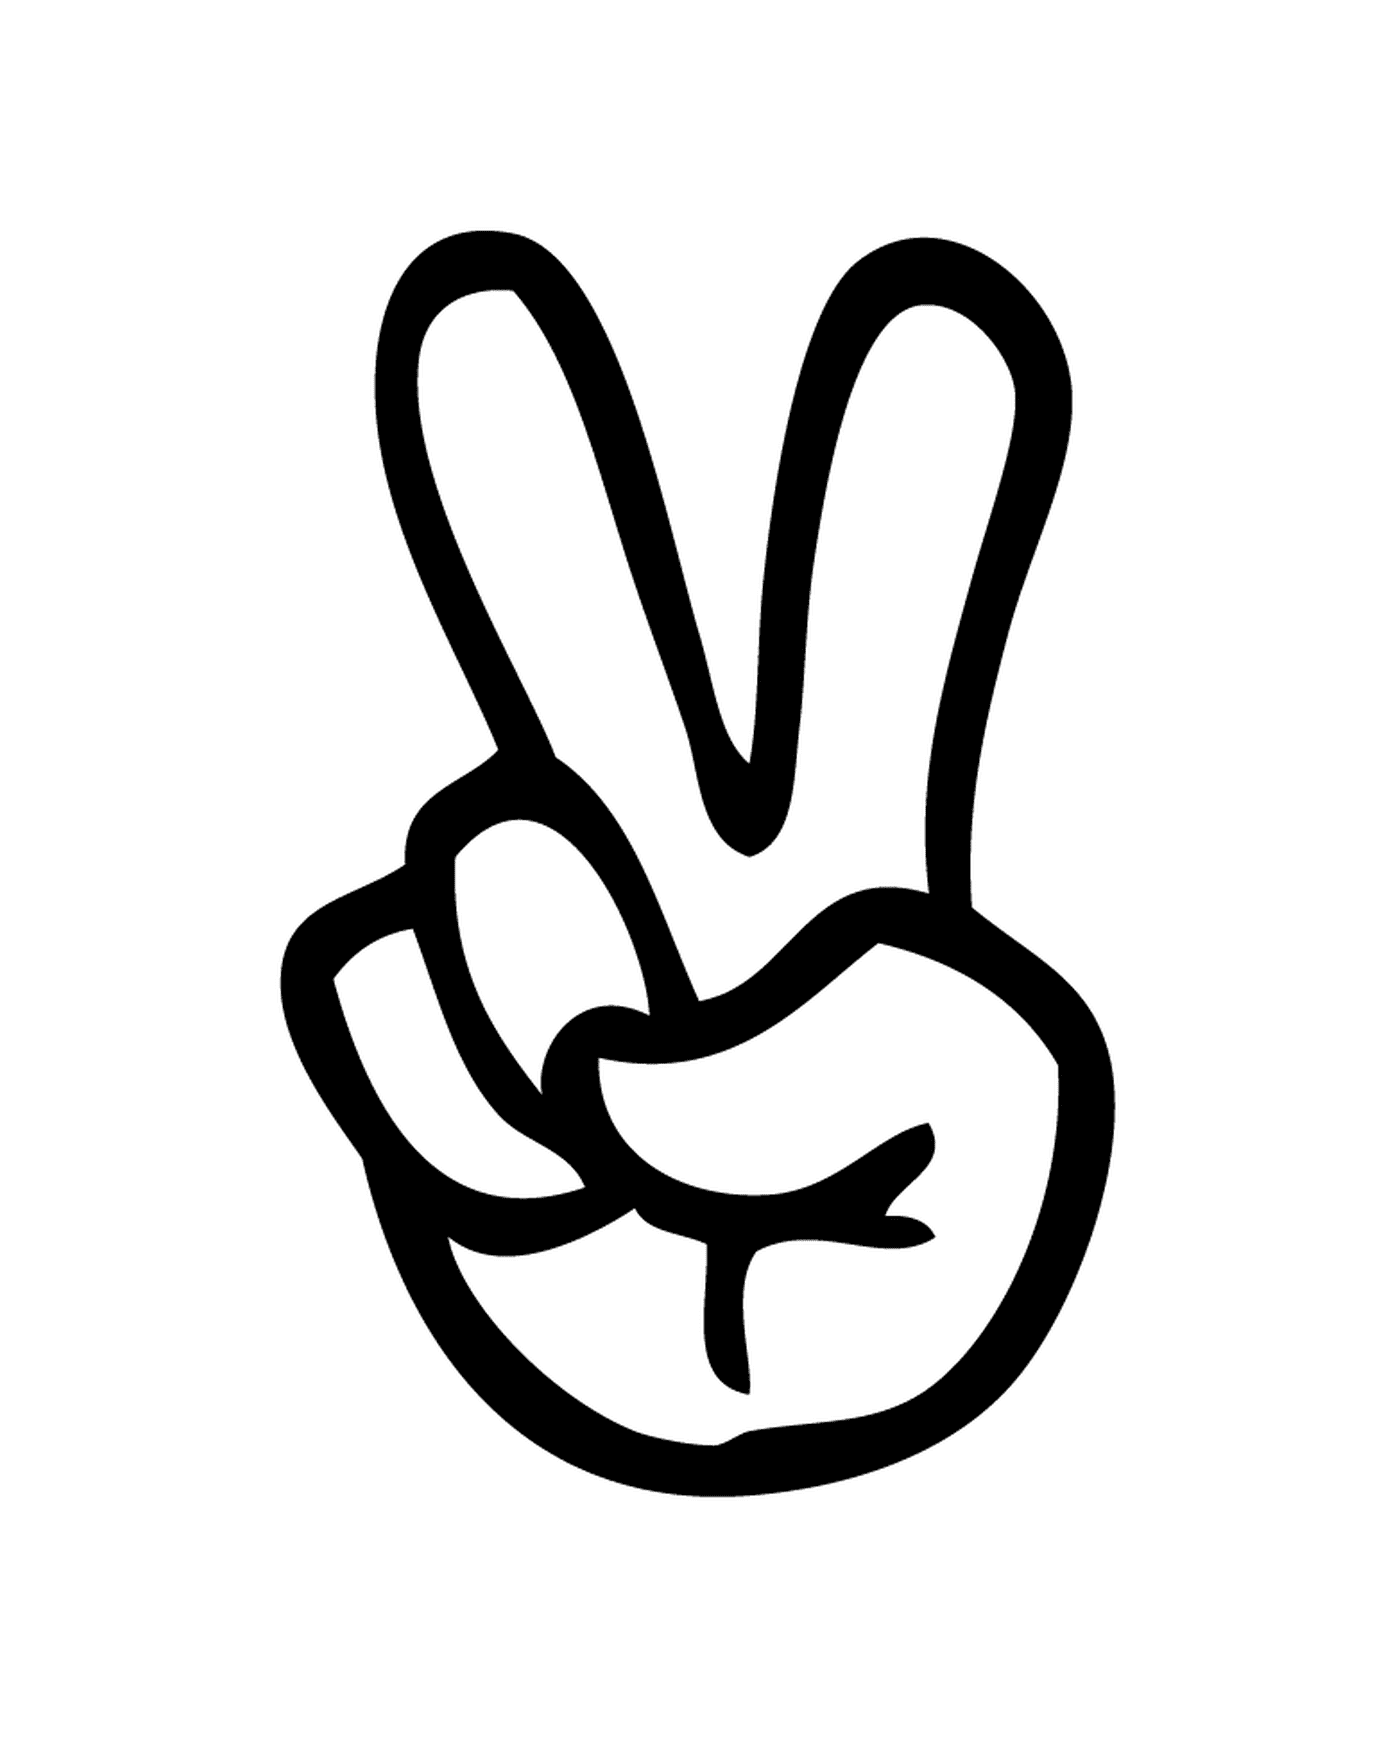  Uma mão com um sinal de paz desenhado sobre ele 